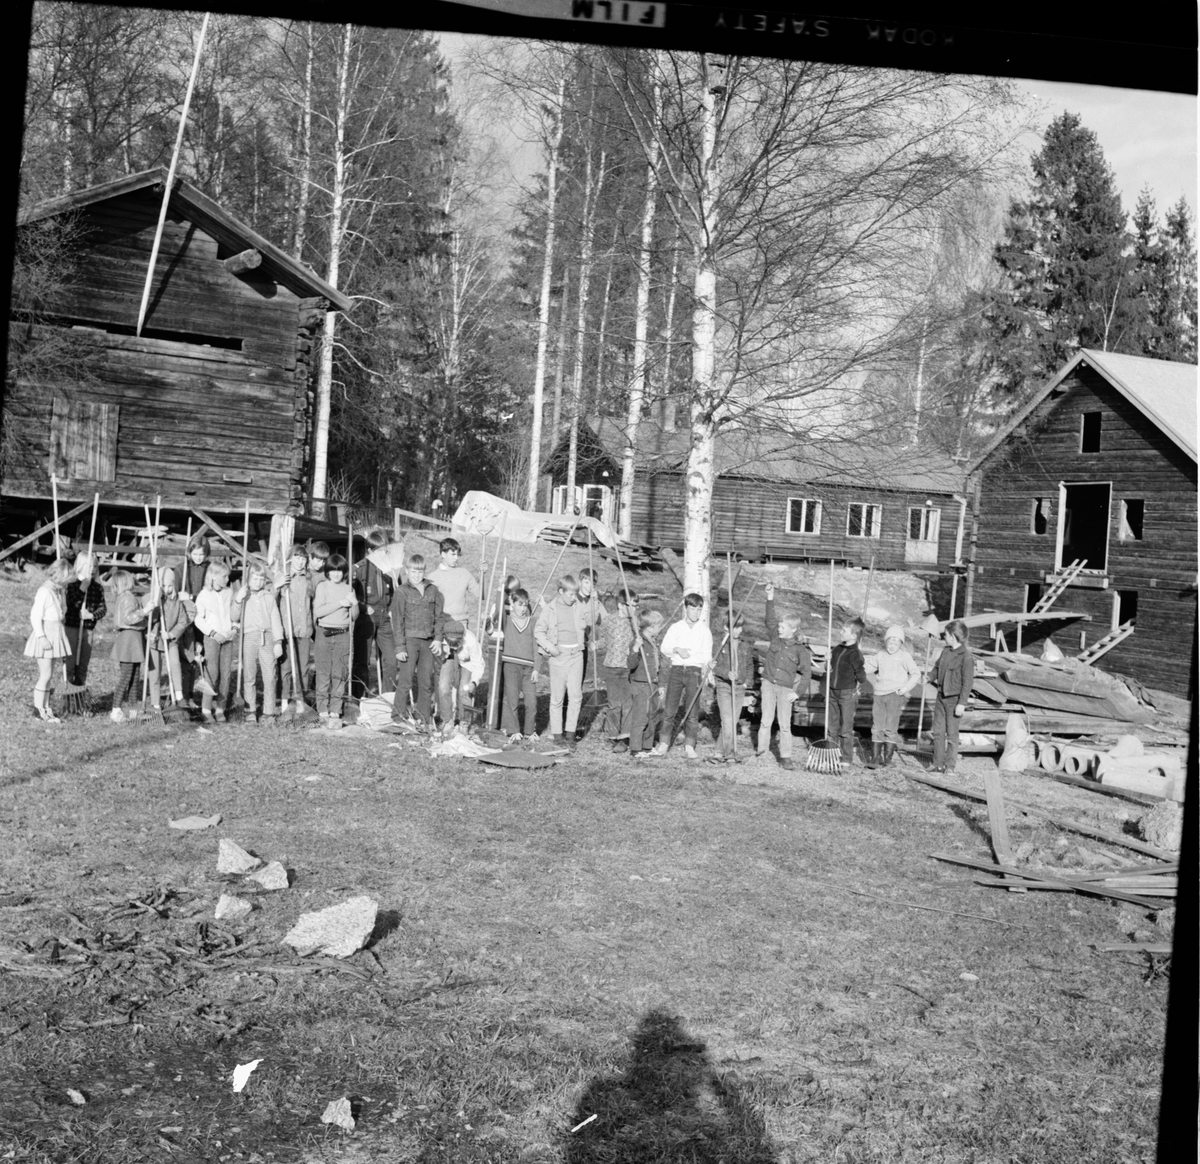 Arbrå,
Scouterna räfsar vid fornhemmet,
Mars 1969